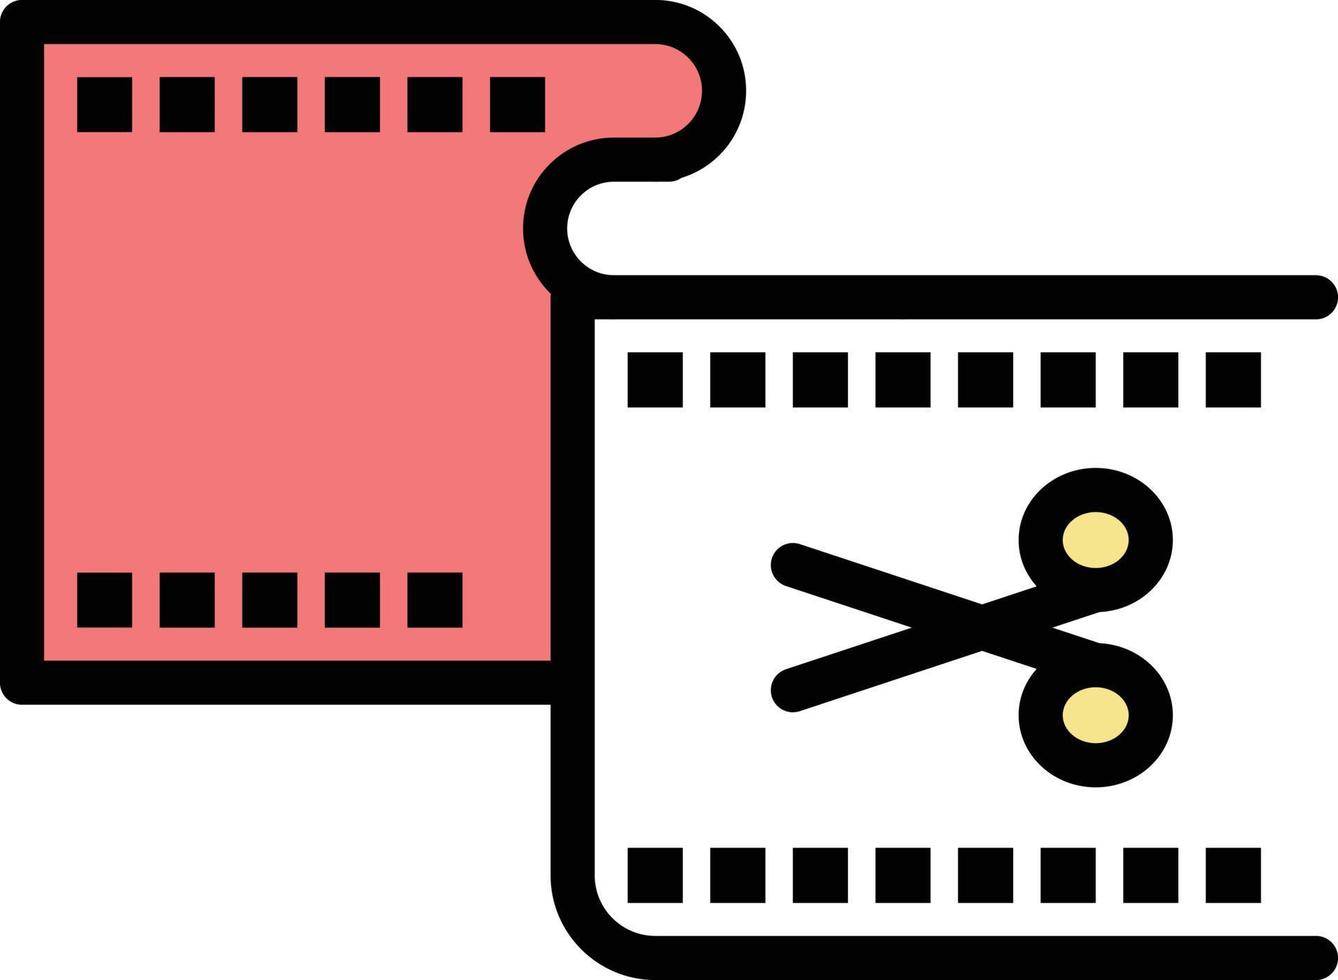 clip tagliare modificare la modifica film piatto colore icona vettore icona bandiera modello